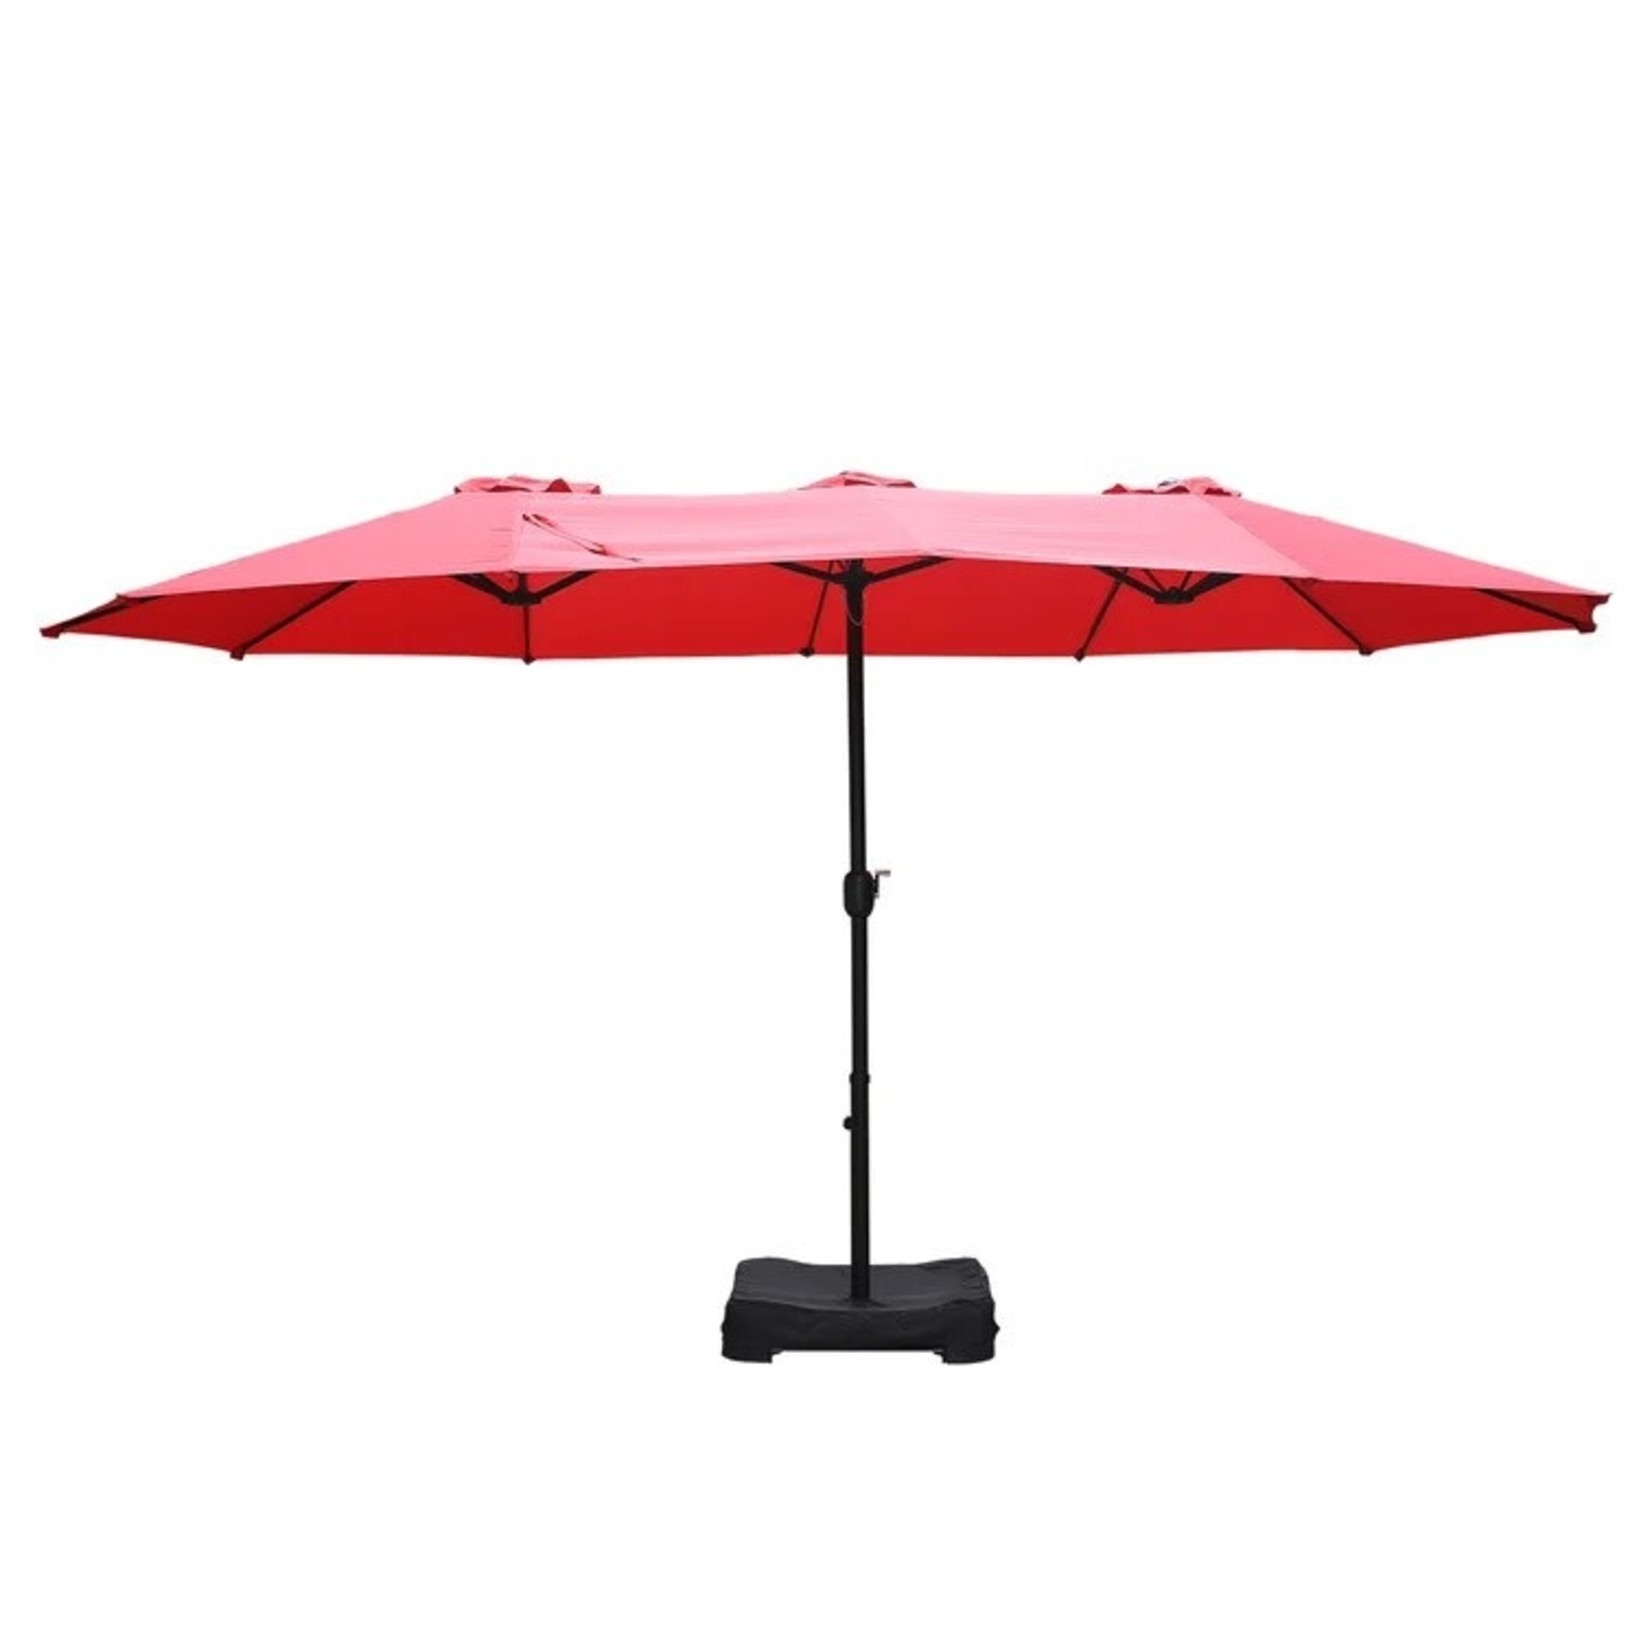 *Frances 15' x 9' Rectangular Market Umbrella - Red